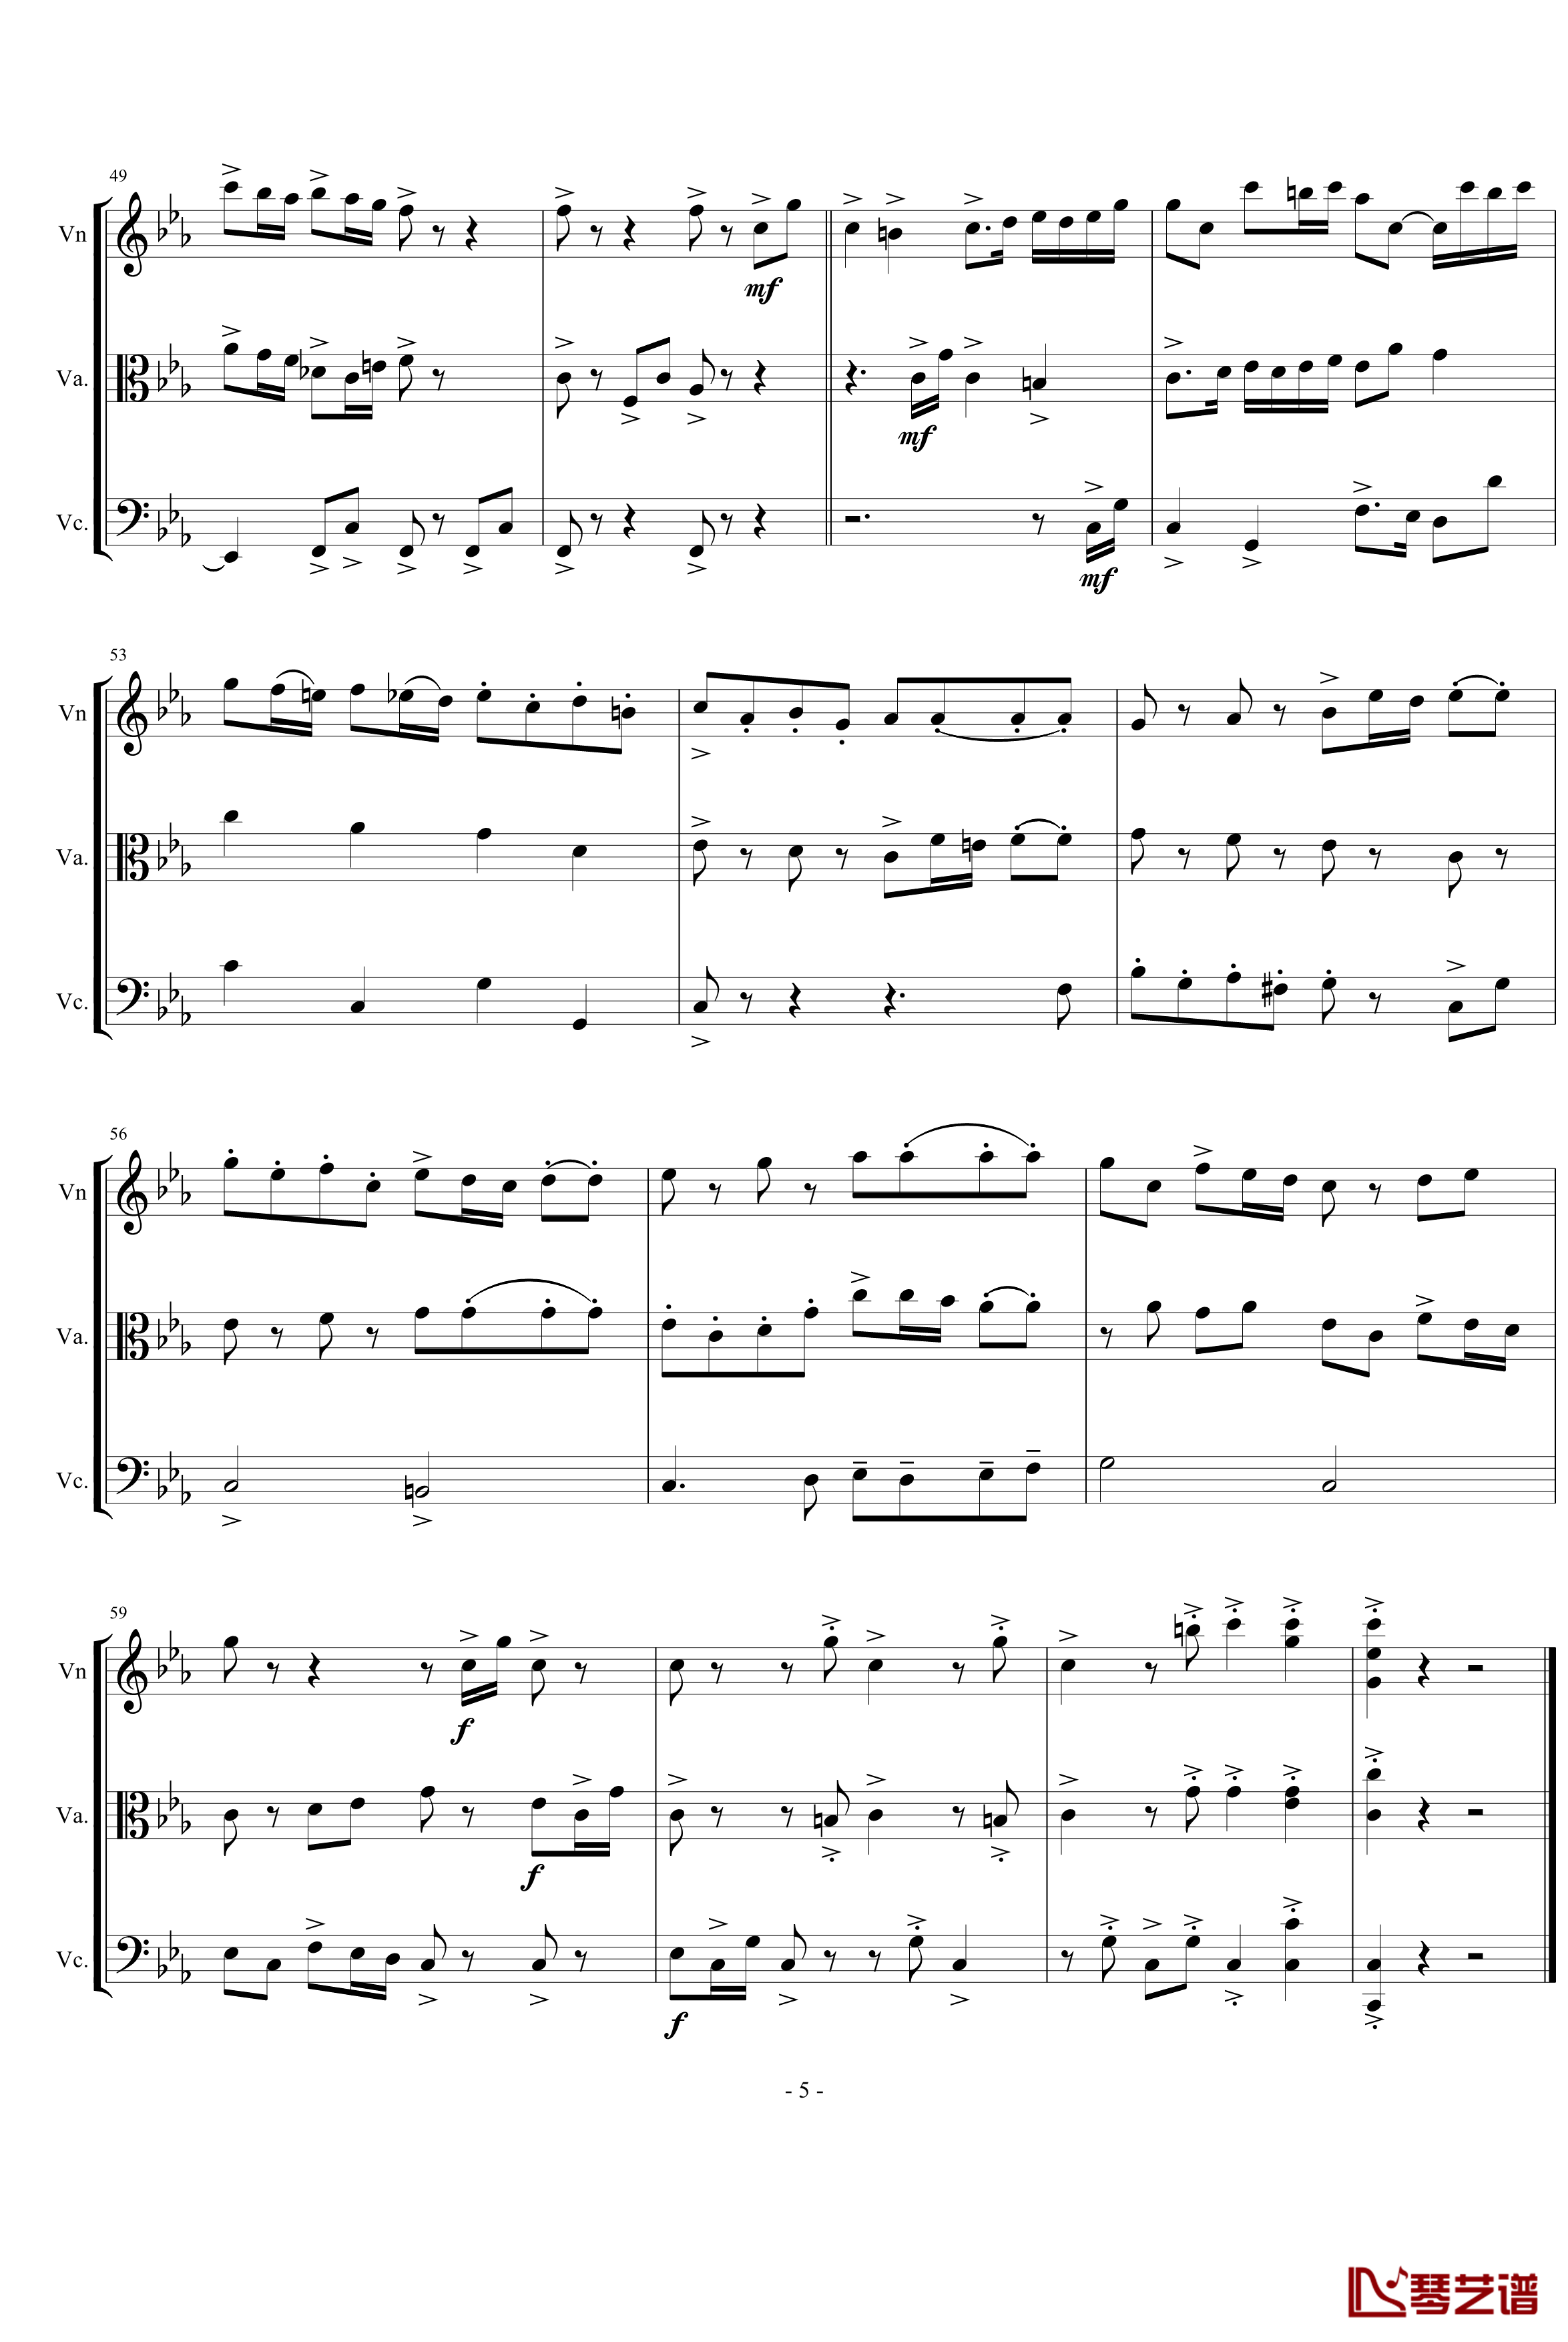 三声部赋格钢琴谱-为弦乐三重奏而作-琴辉5